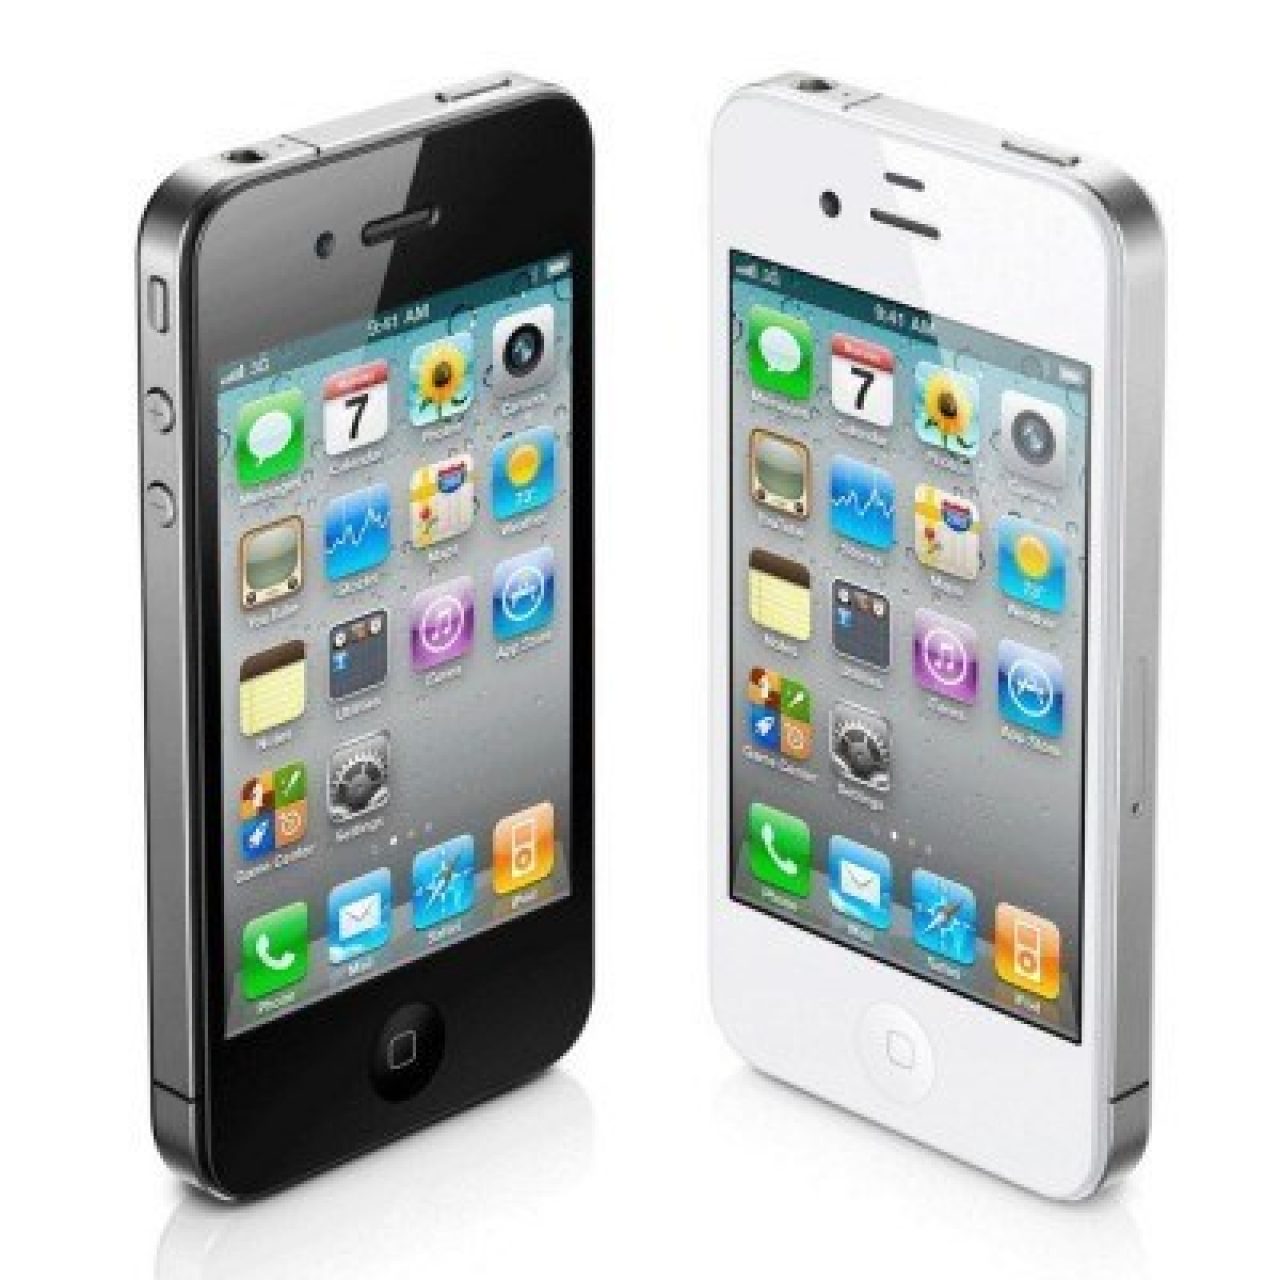 苹果iPhone4(白色版)_(Apple)苹果iPhone4(白色版)报价、参数、图片、怎么样_太平洋产品报价